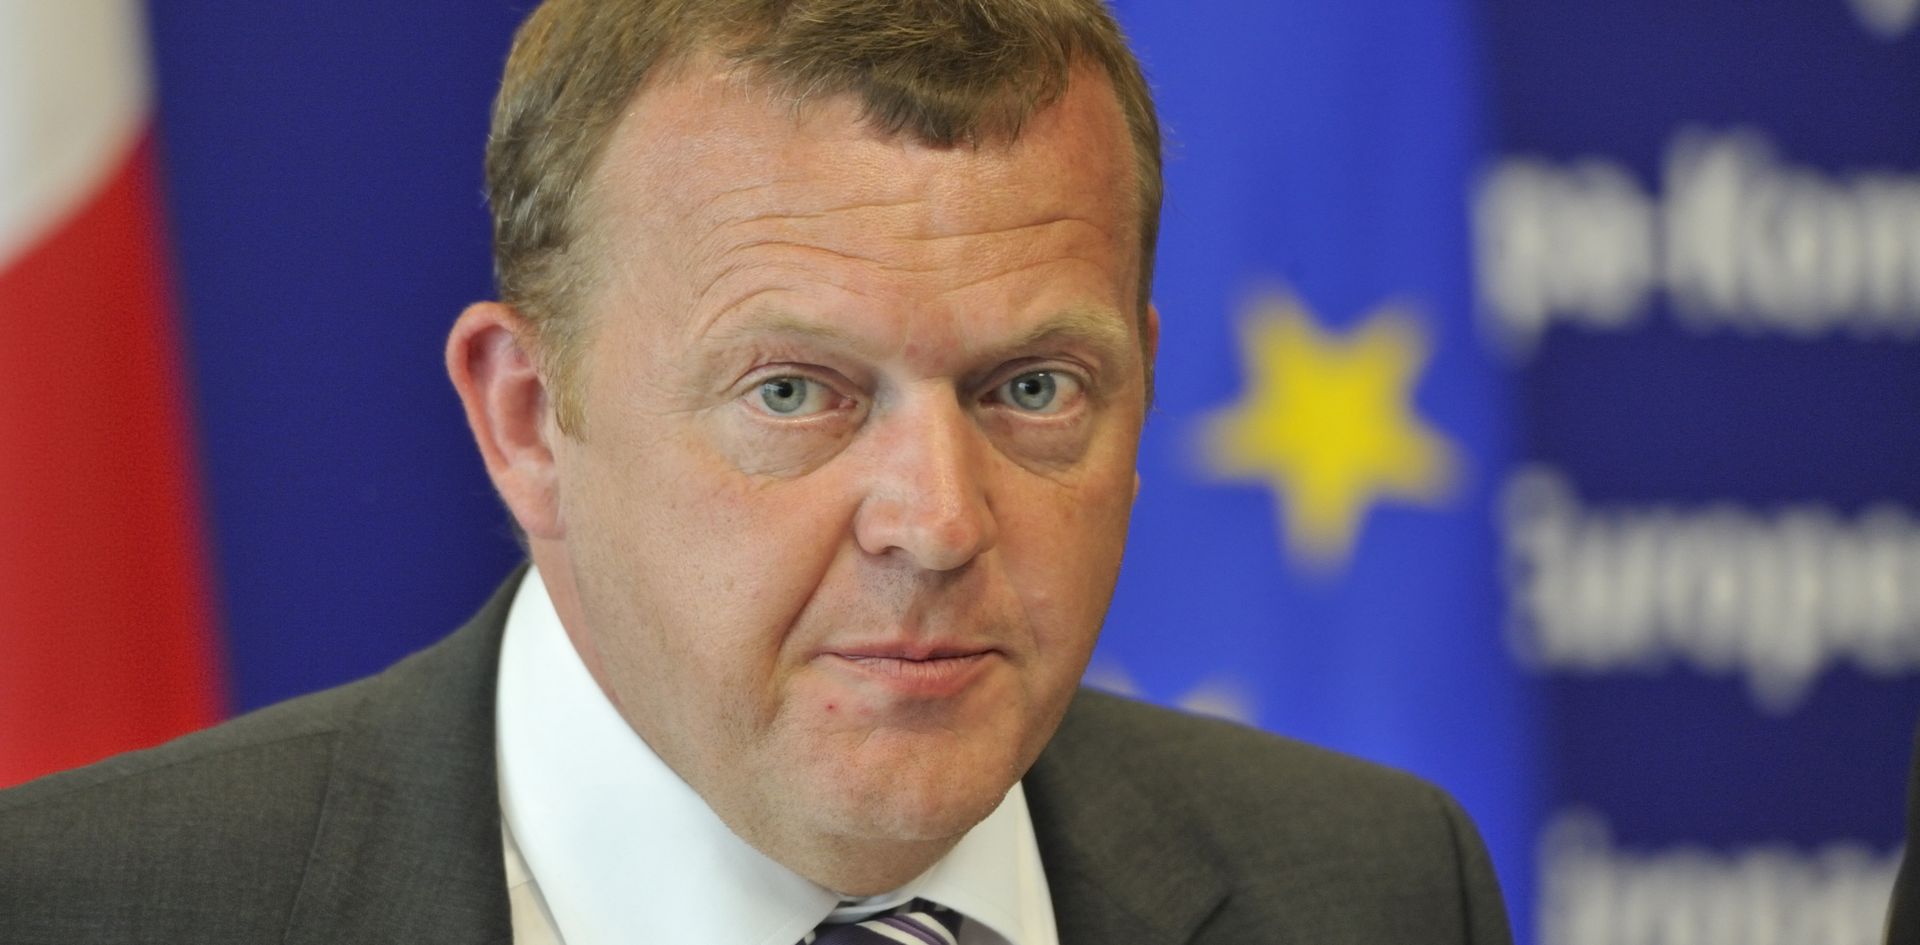 EU izbori u Danskoj: pala potpora euroskepticima